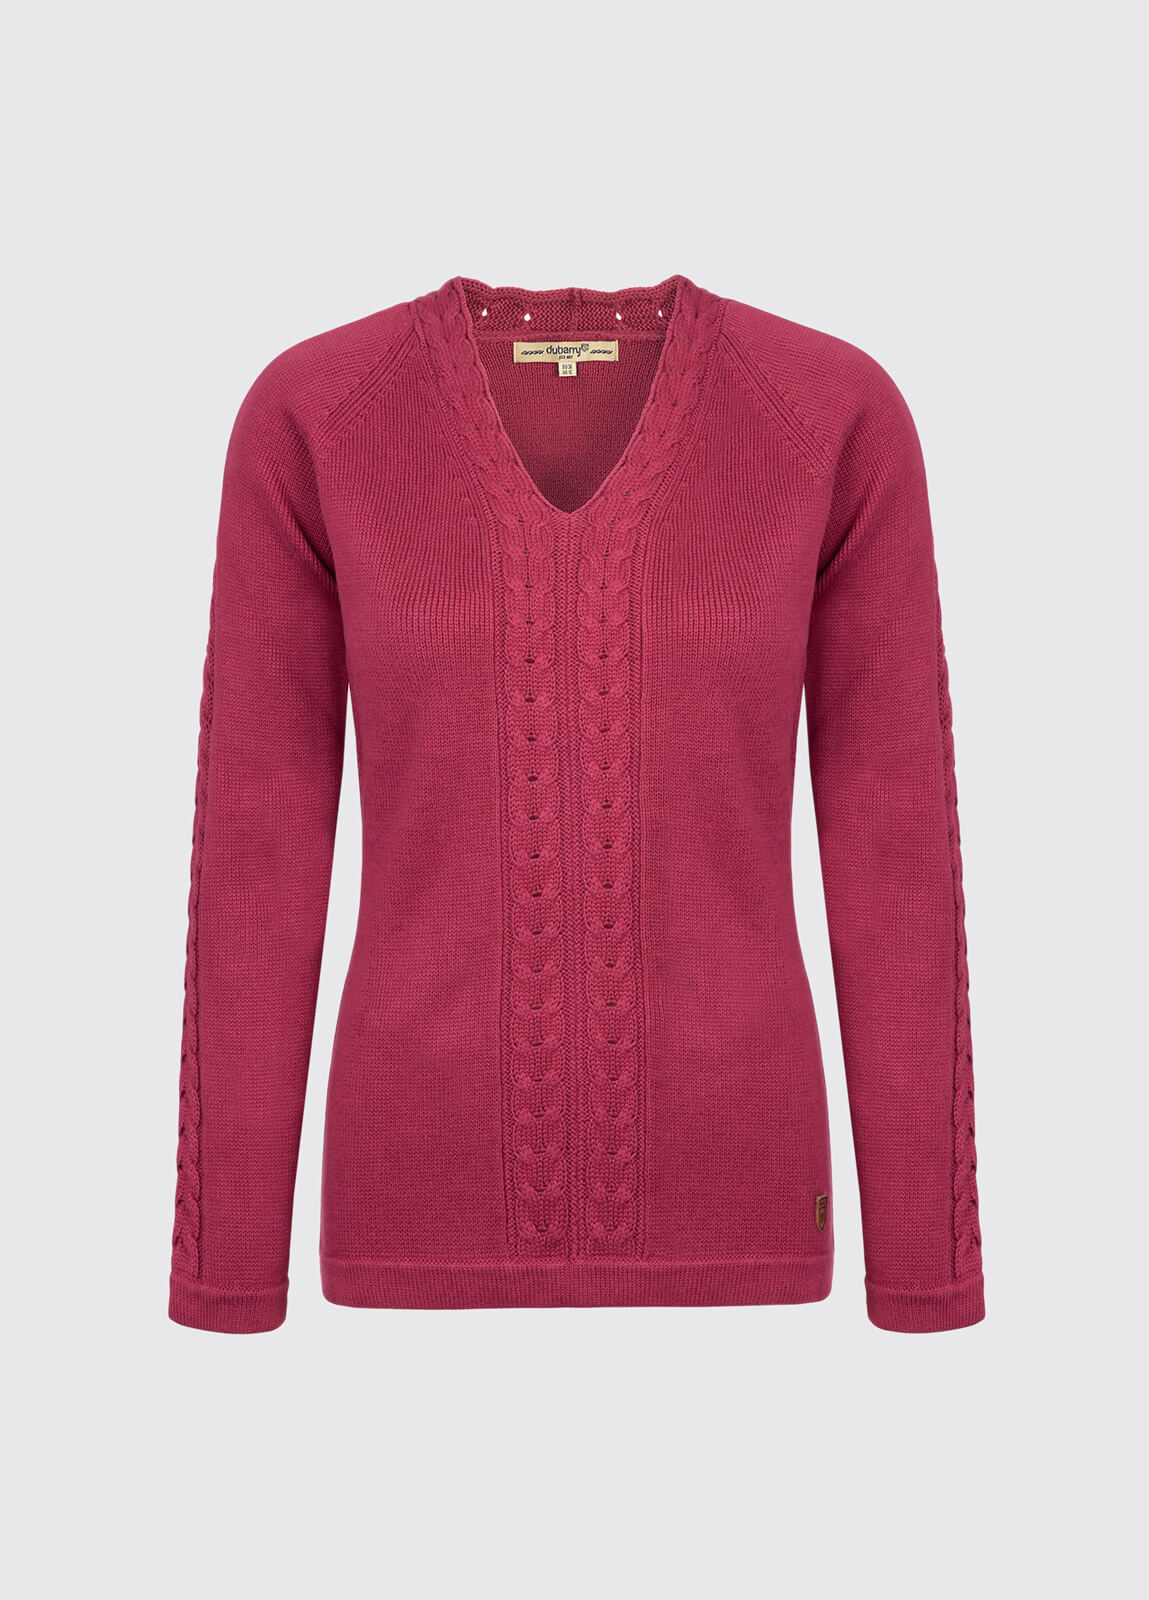 Carolan Women's V-neck Knitted Sweater - Merlot Multi